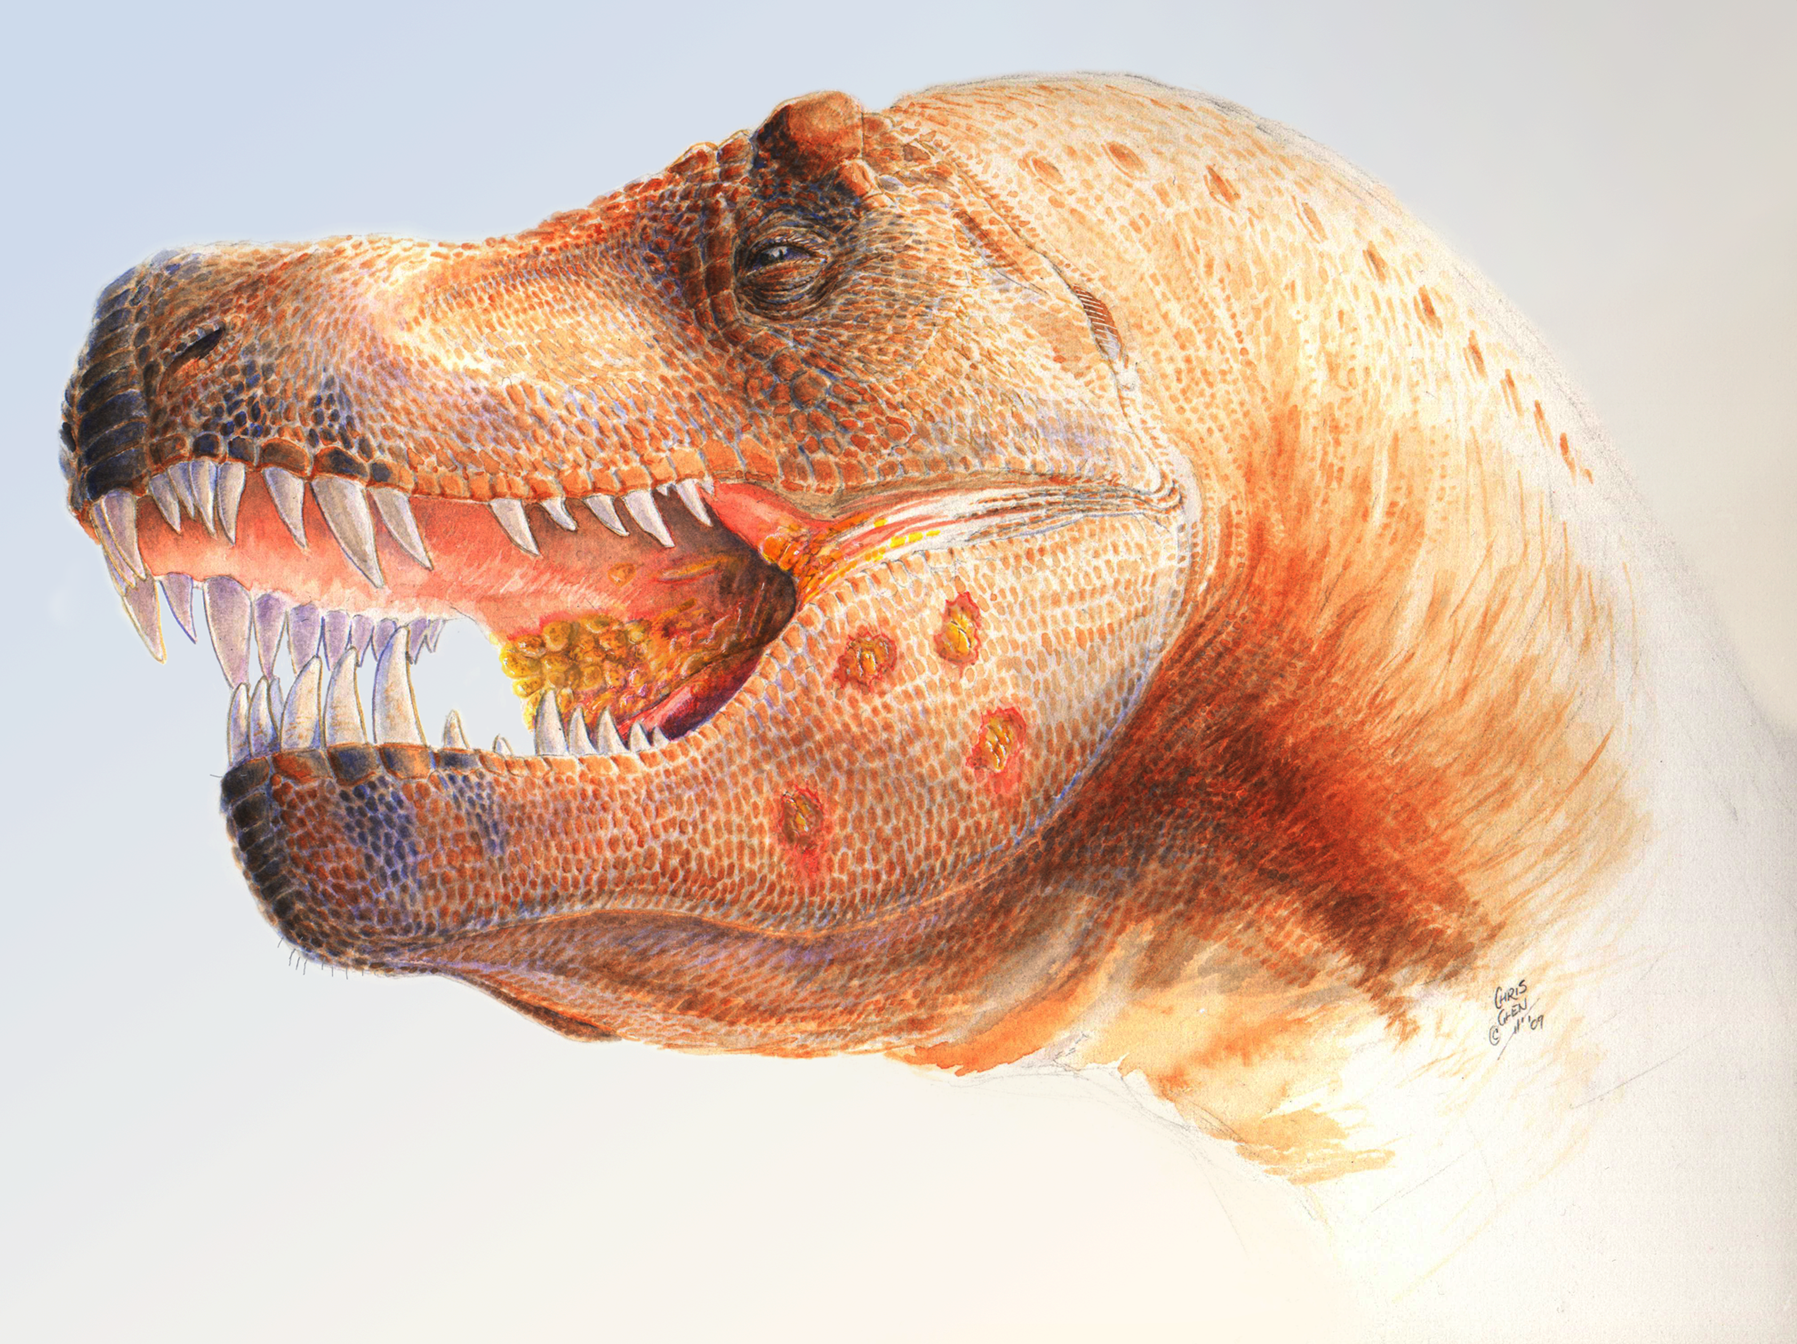 Výtvarná rekonstrukce vzezření dospělého tyranosaura zasaženého infekcí parazitickým prvokem příbuzným dnešnímu druhu Trichomonas gallinae. Založeno na exempláři MOR 980, objeveném v Montaně roku 1997. Kredit: Chris Glen – Wolff, E. D. S., et al. (20